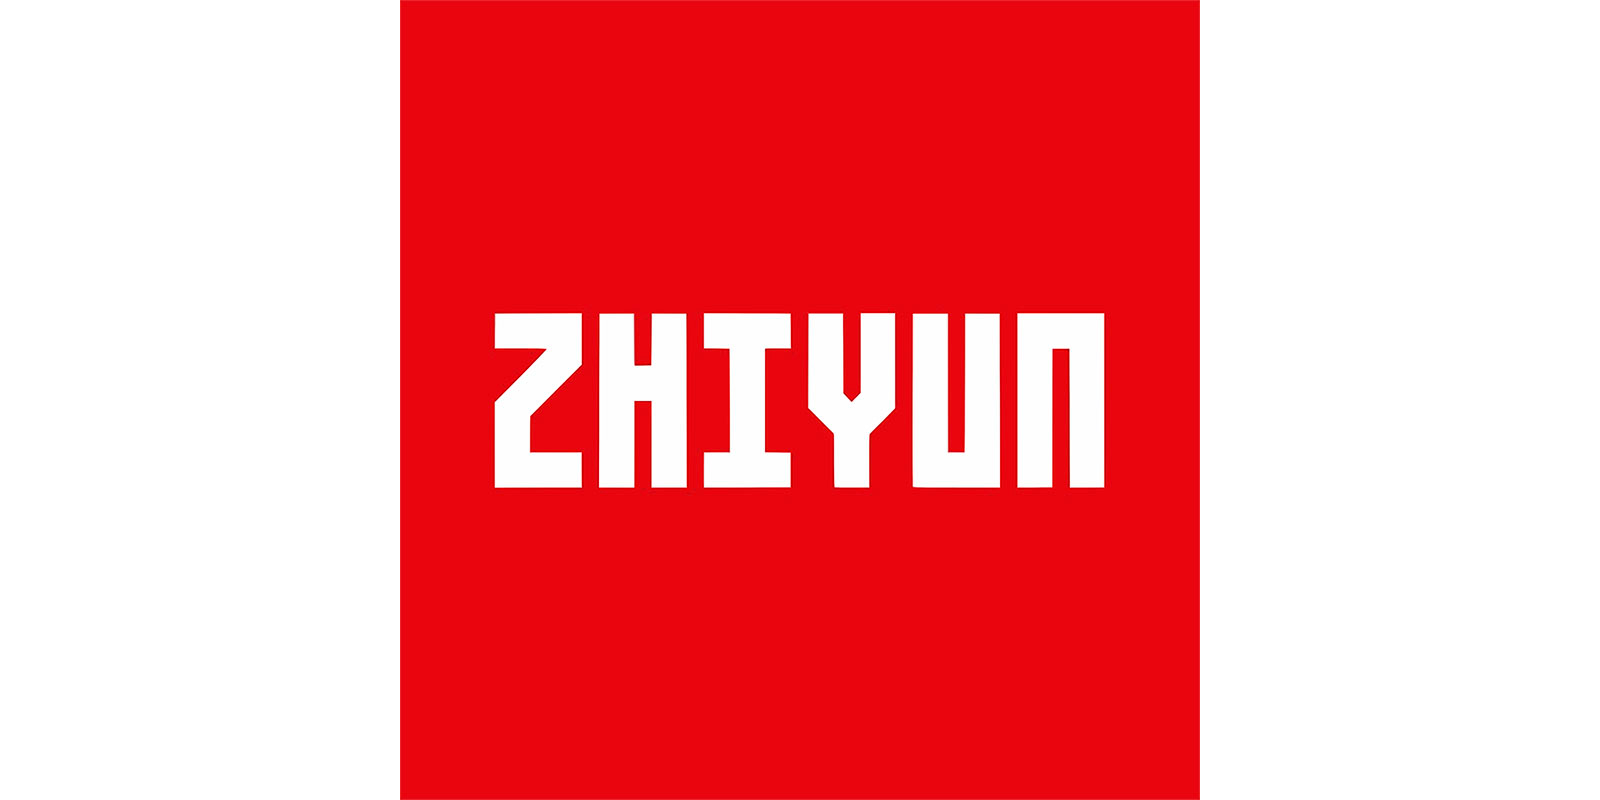 Zhiyun-tech